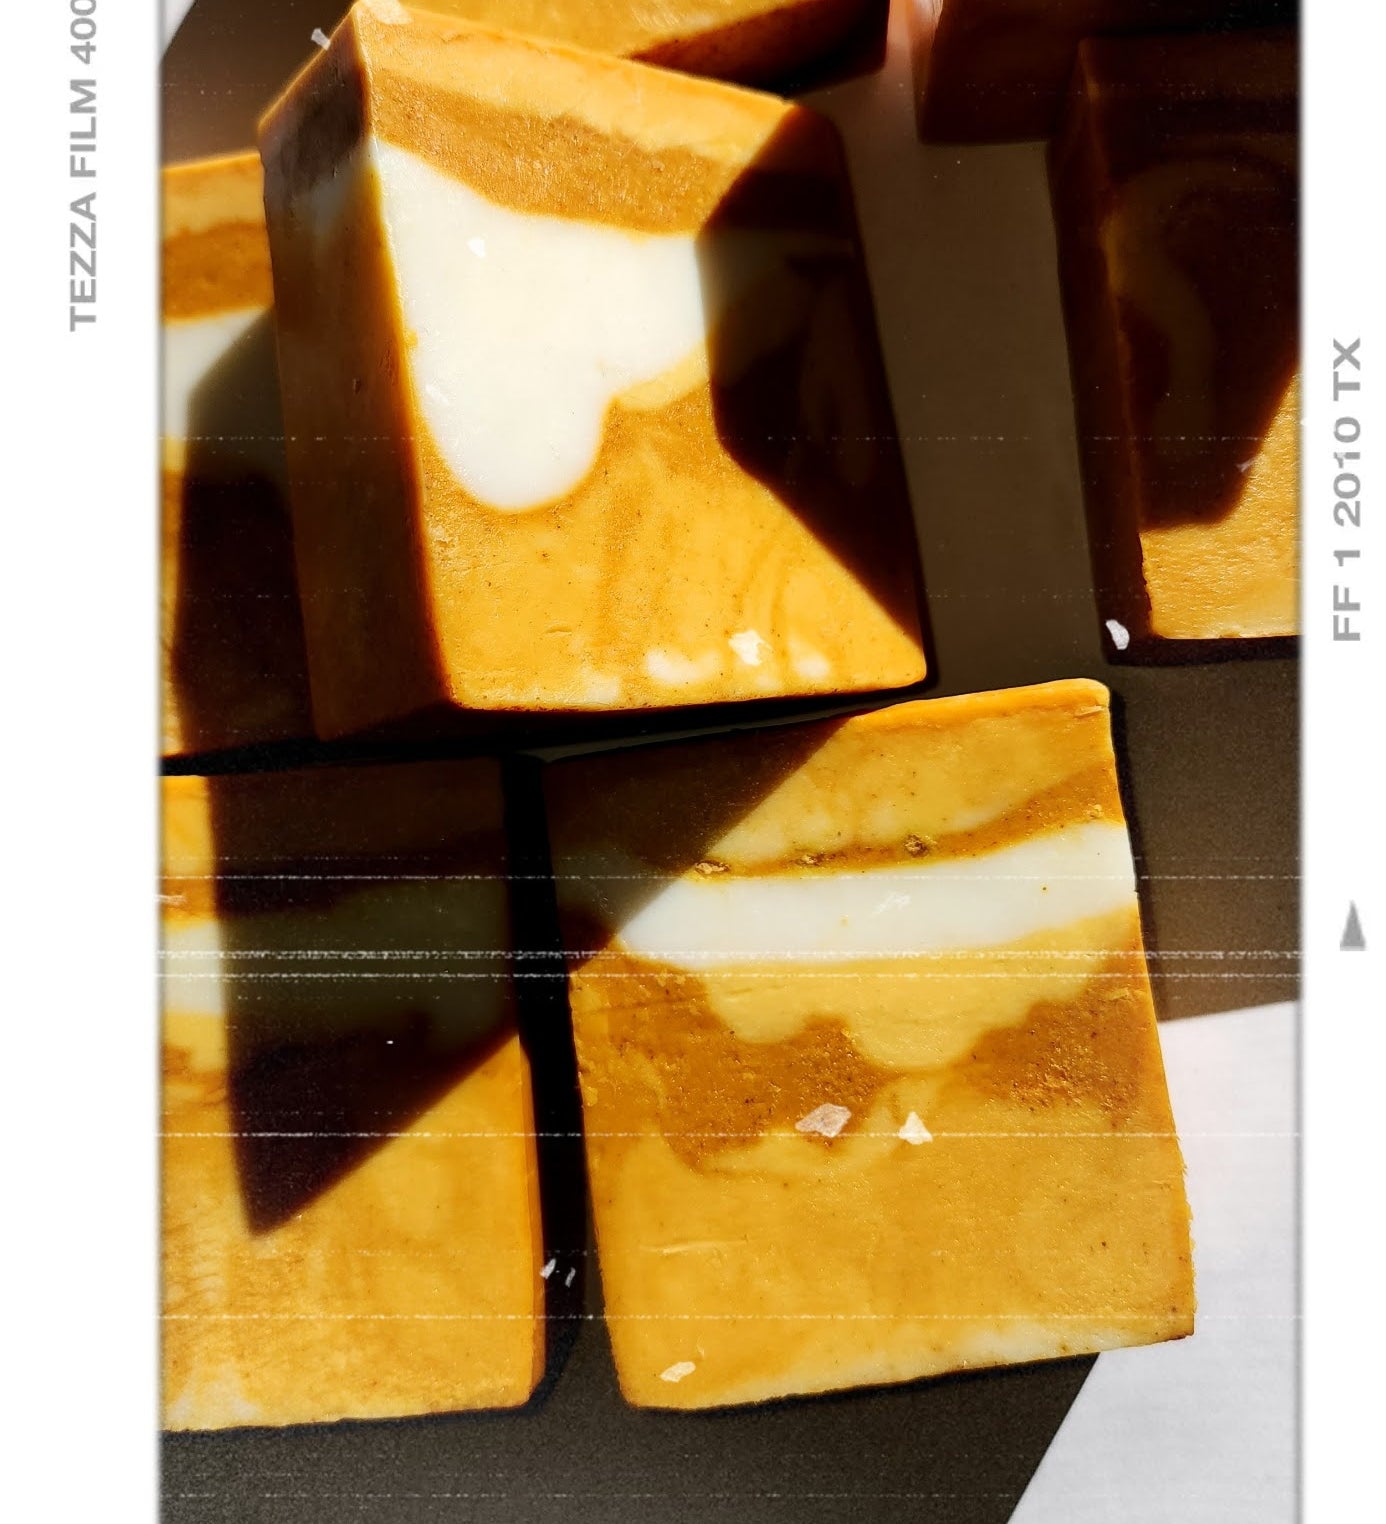 Turmeric + Citrus Bar Soap - Ego Naturals